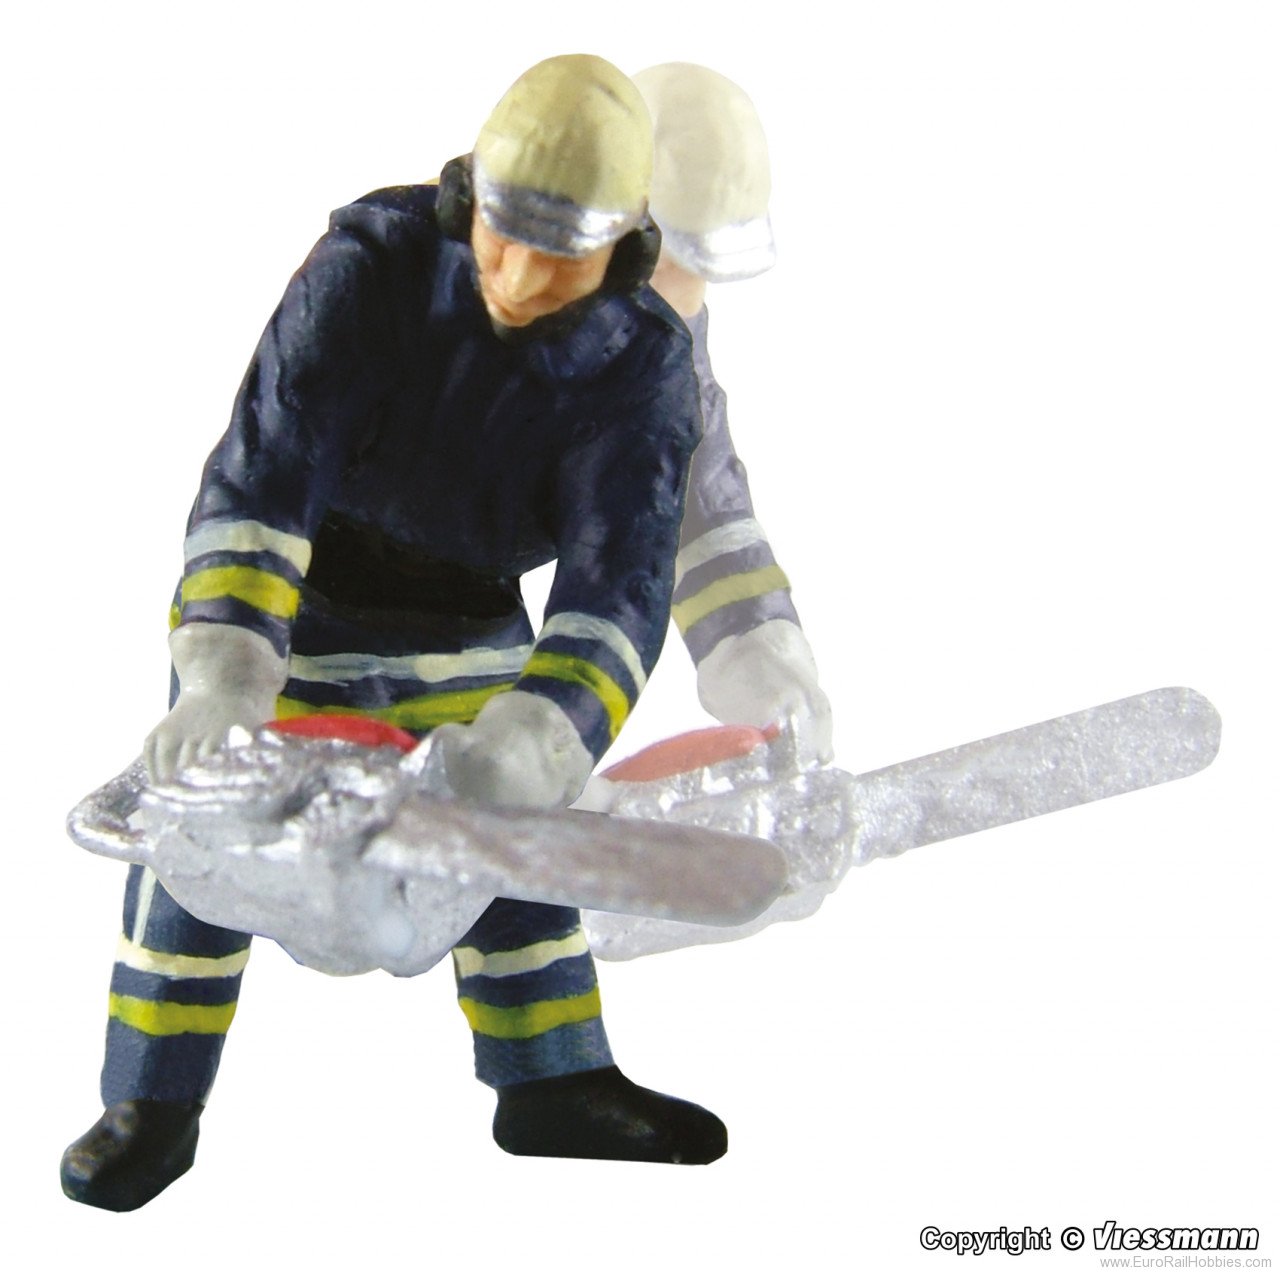 Viessmann 1541 H0 Fireman with chain saw, moving